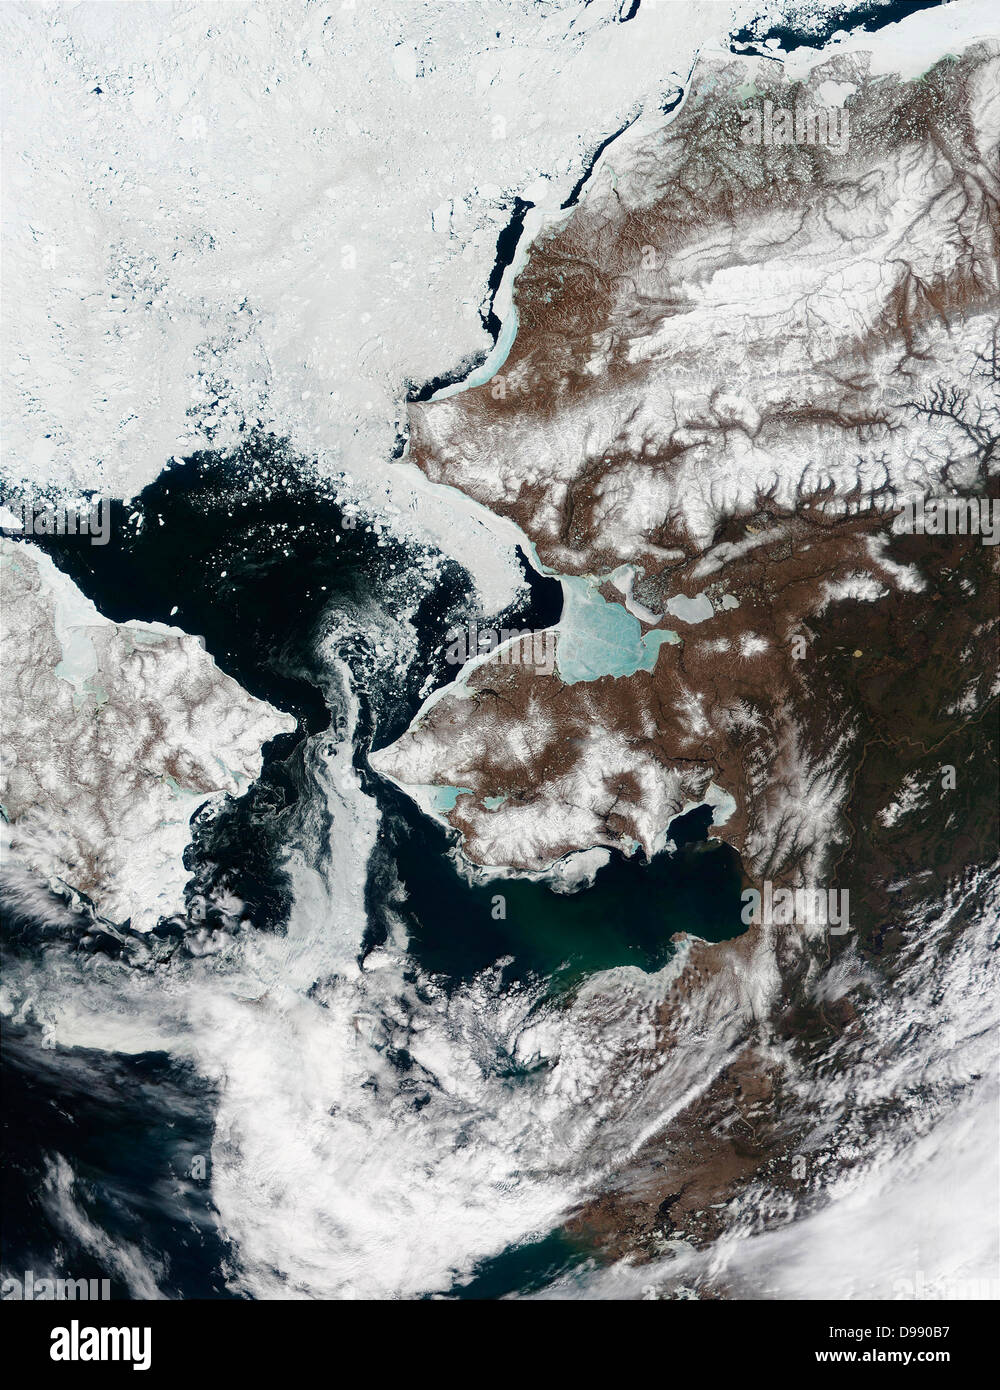 La neve è ritirata dall'Alaska.s il paesaggio e lo stretto di Bering, che separa l'Alaska della penisola di Seward (centro) dalla Siberia,è in gran parte privo di ghiaccio in questa immagine dello spettroradiometro MODIS da Maggio 22, 2002. Mare di ghiaccio nel Kotzebue Sound (a nord della penisola di Seward) è assottigliata notevolmente e ora appare blu cielo, come il riflesso azzurro dell'acqua mostra attraverso dal di sotto. Mare di ghiaccio è ritirata verso nord nel mare Chukchi. Foto Stock